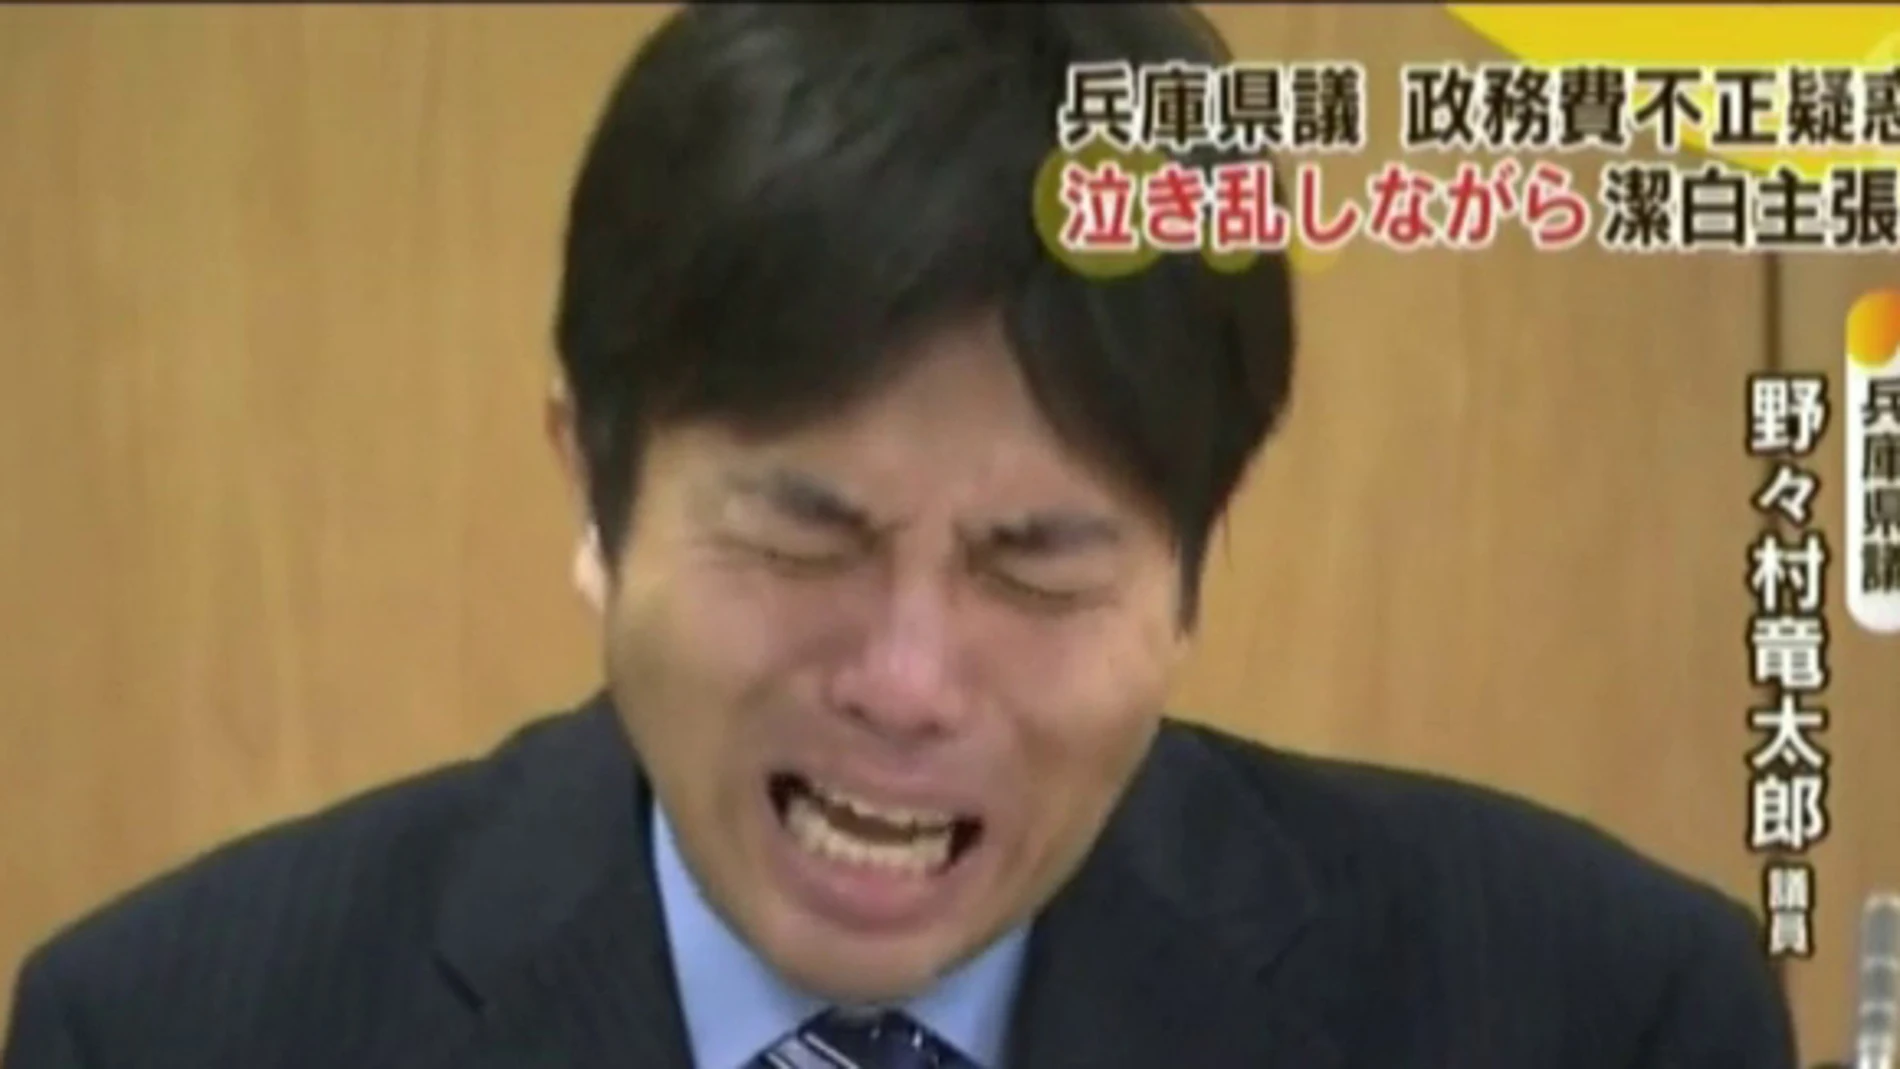 Un político japonés llora desconsolado explicando el mal uso de fondos públicos